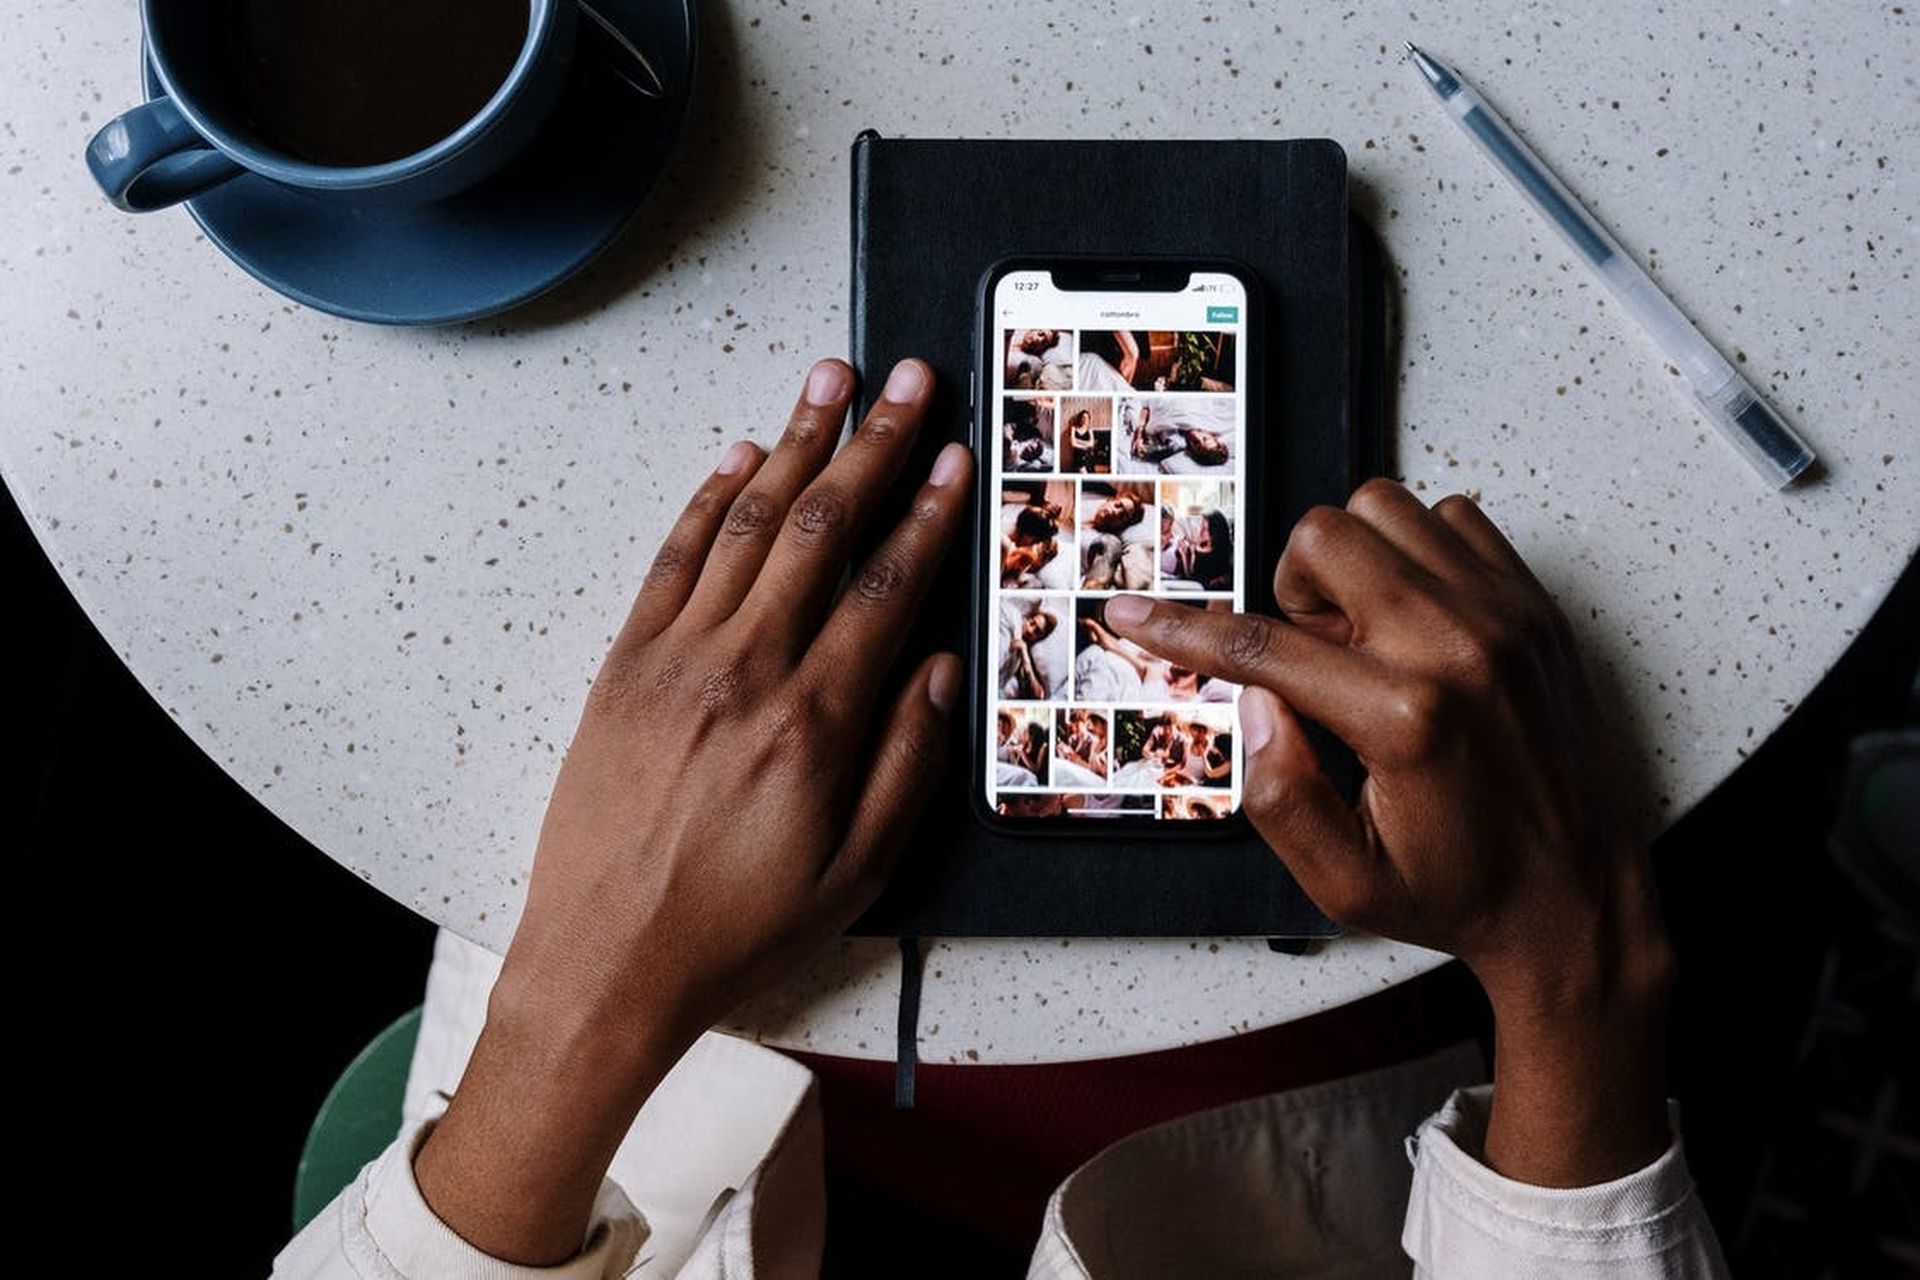 Эта новая функция масштабирования изображения профиля Instagram может пригодиться при быстрой проверке различных профилей.